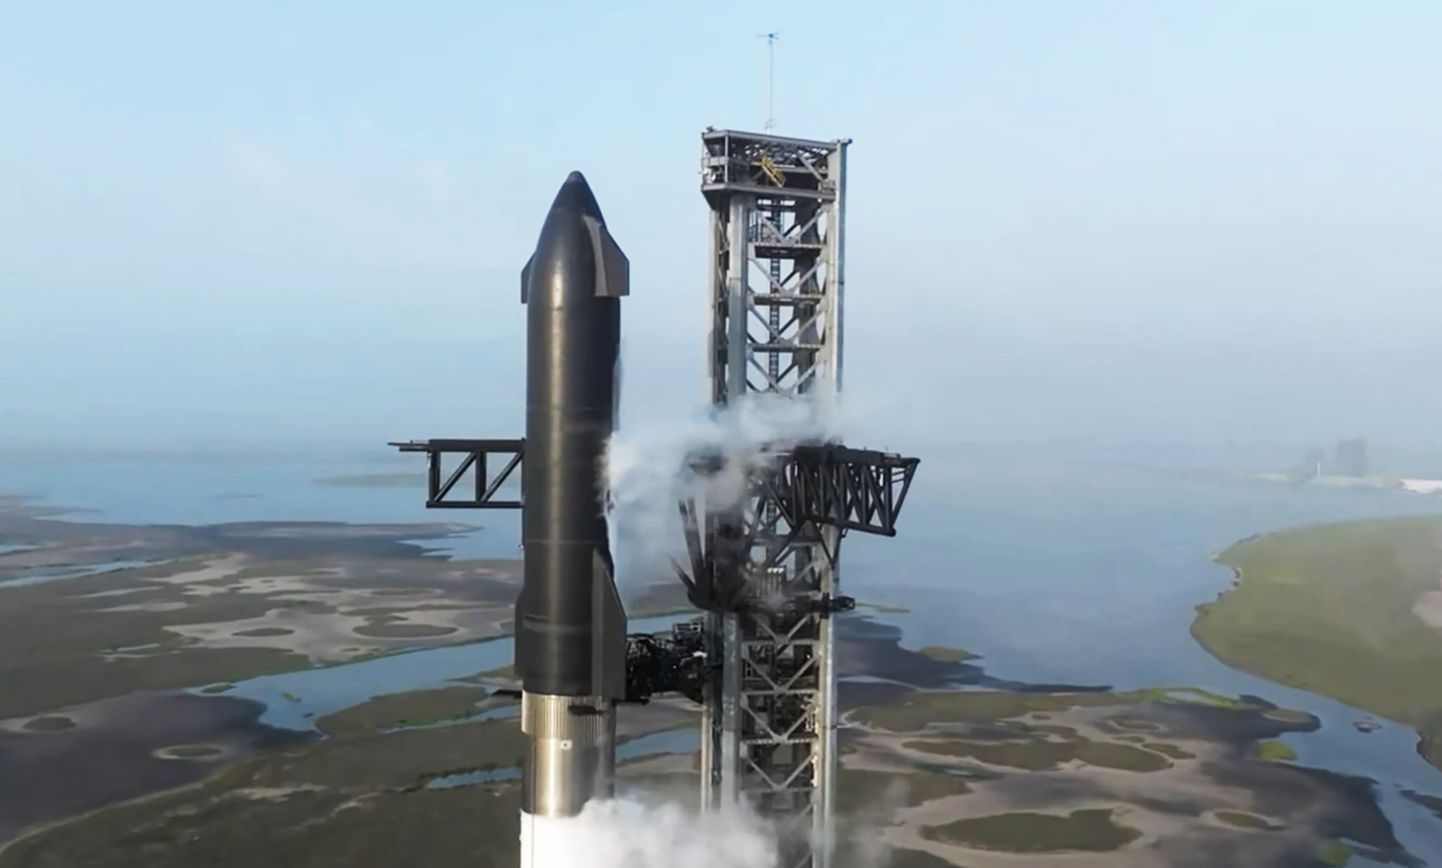 Mis oleks, kui paneks SpaceXi megaraketi Starship kergelt pöörlema, et gravitatsiooni tekitada? Ideel on jumet, kuid selle juures tulevad esile ka suured probleemid. Kes suudaks sellises karussellis tiirelda, ilma et süda pahaks läheks?